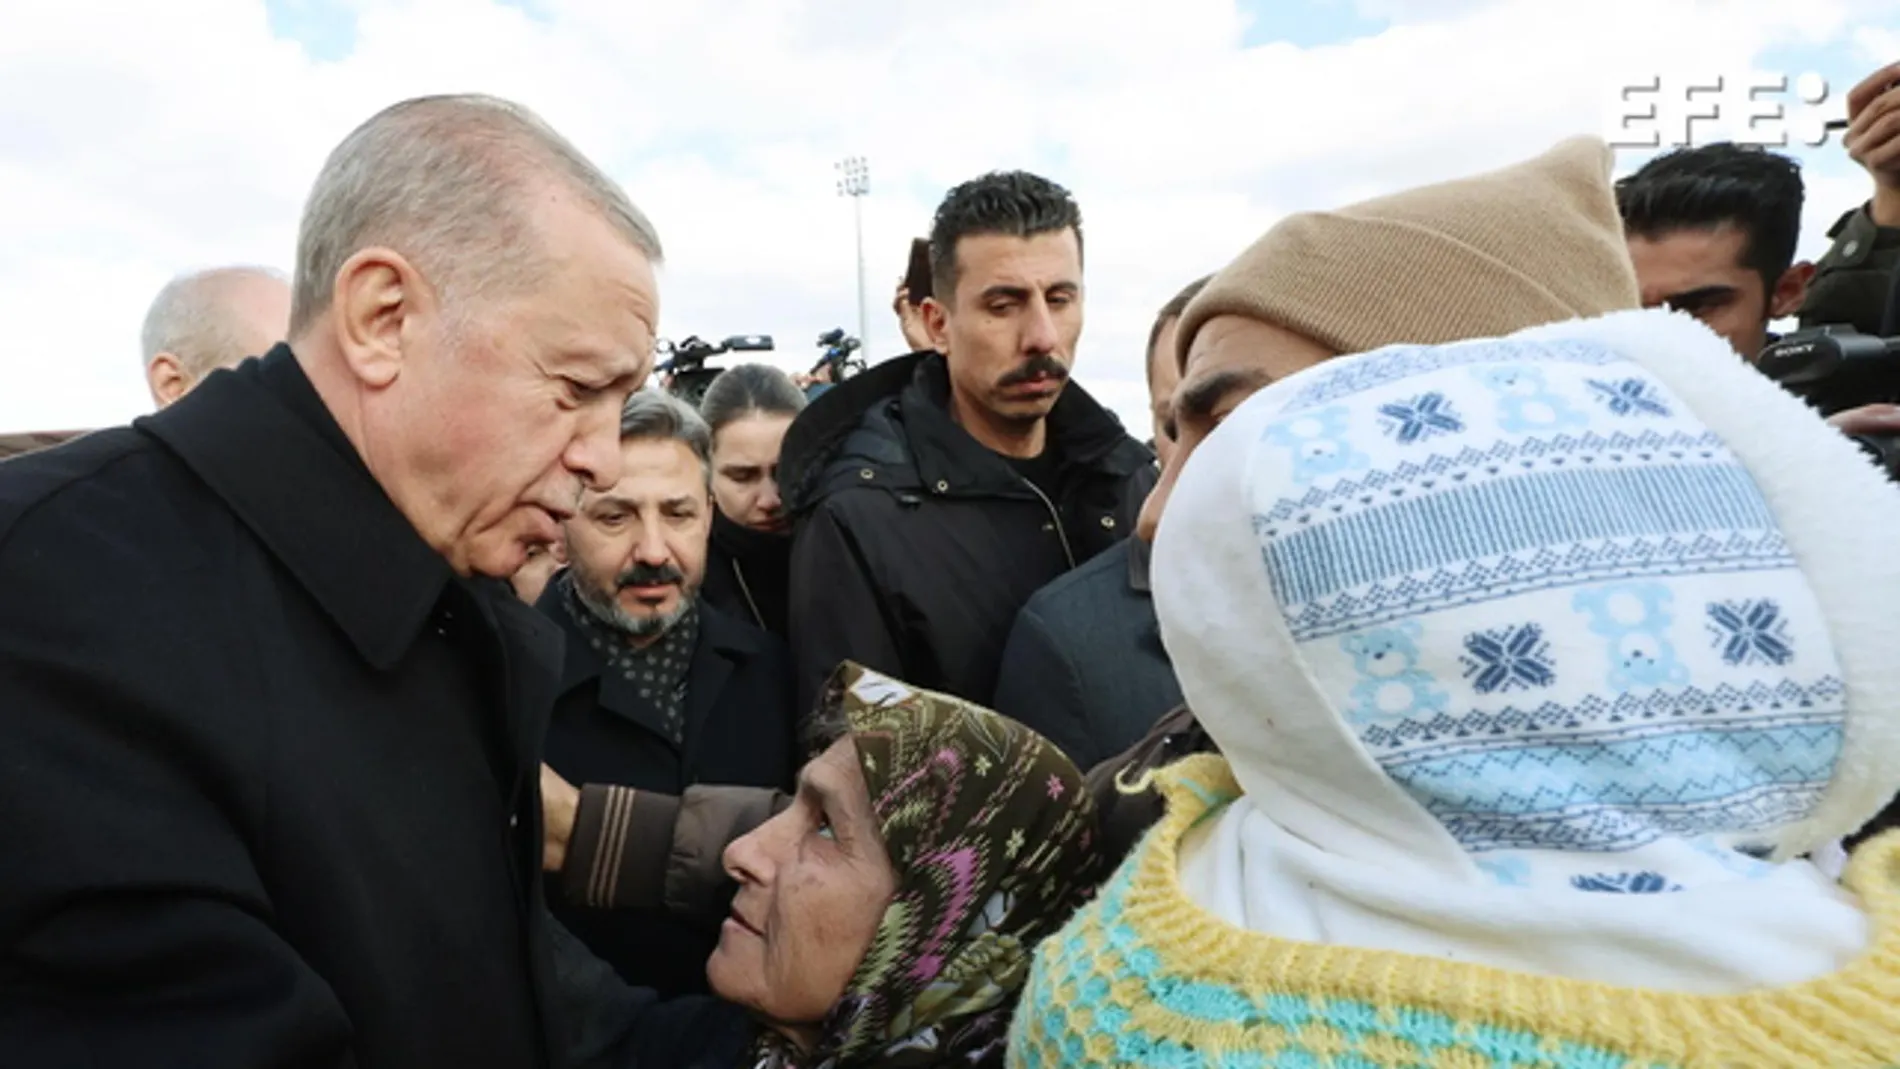 El presidnete de Turquía, Tayyip Erdogan, visita un campamento de supervivientes de los terremotos.